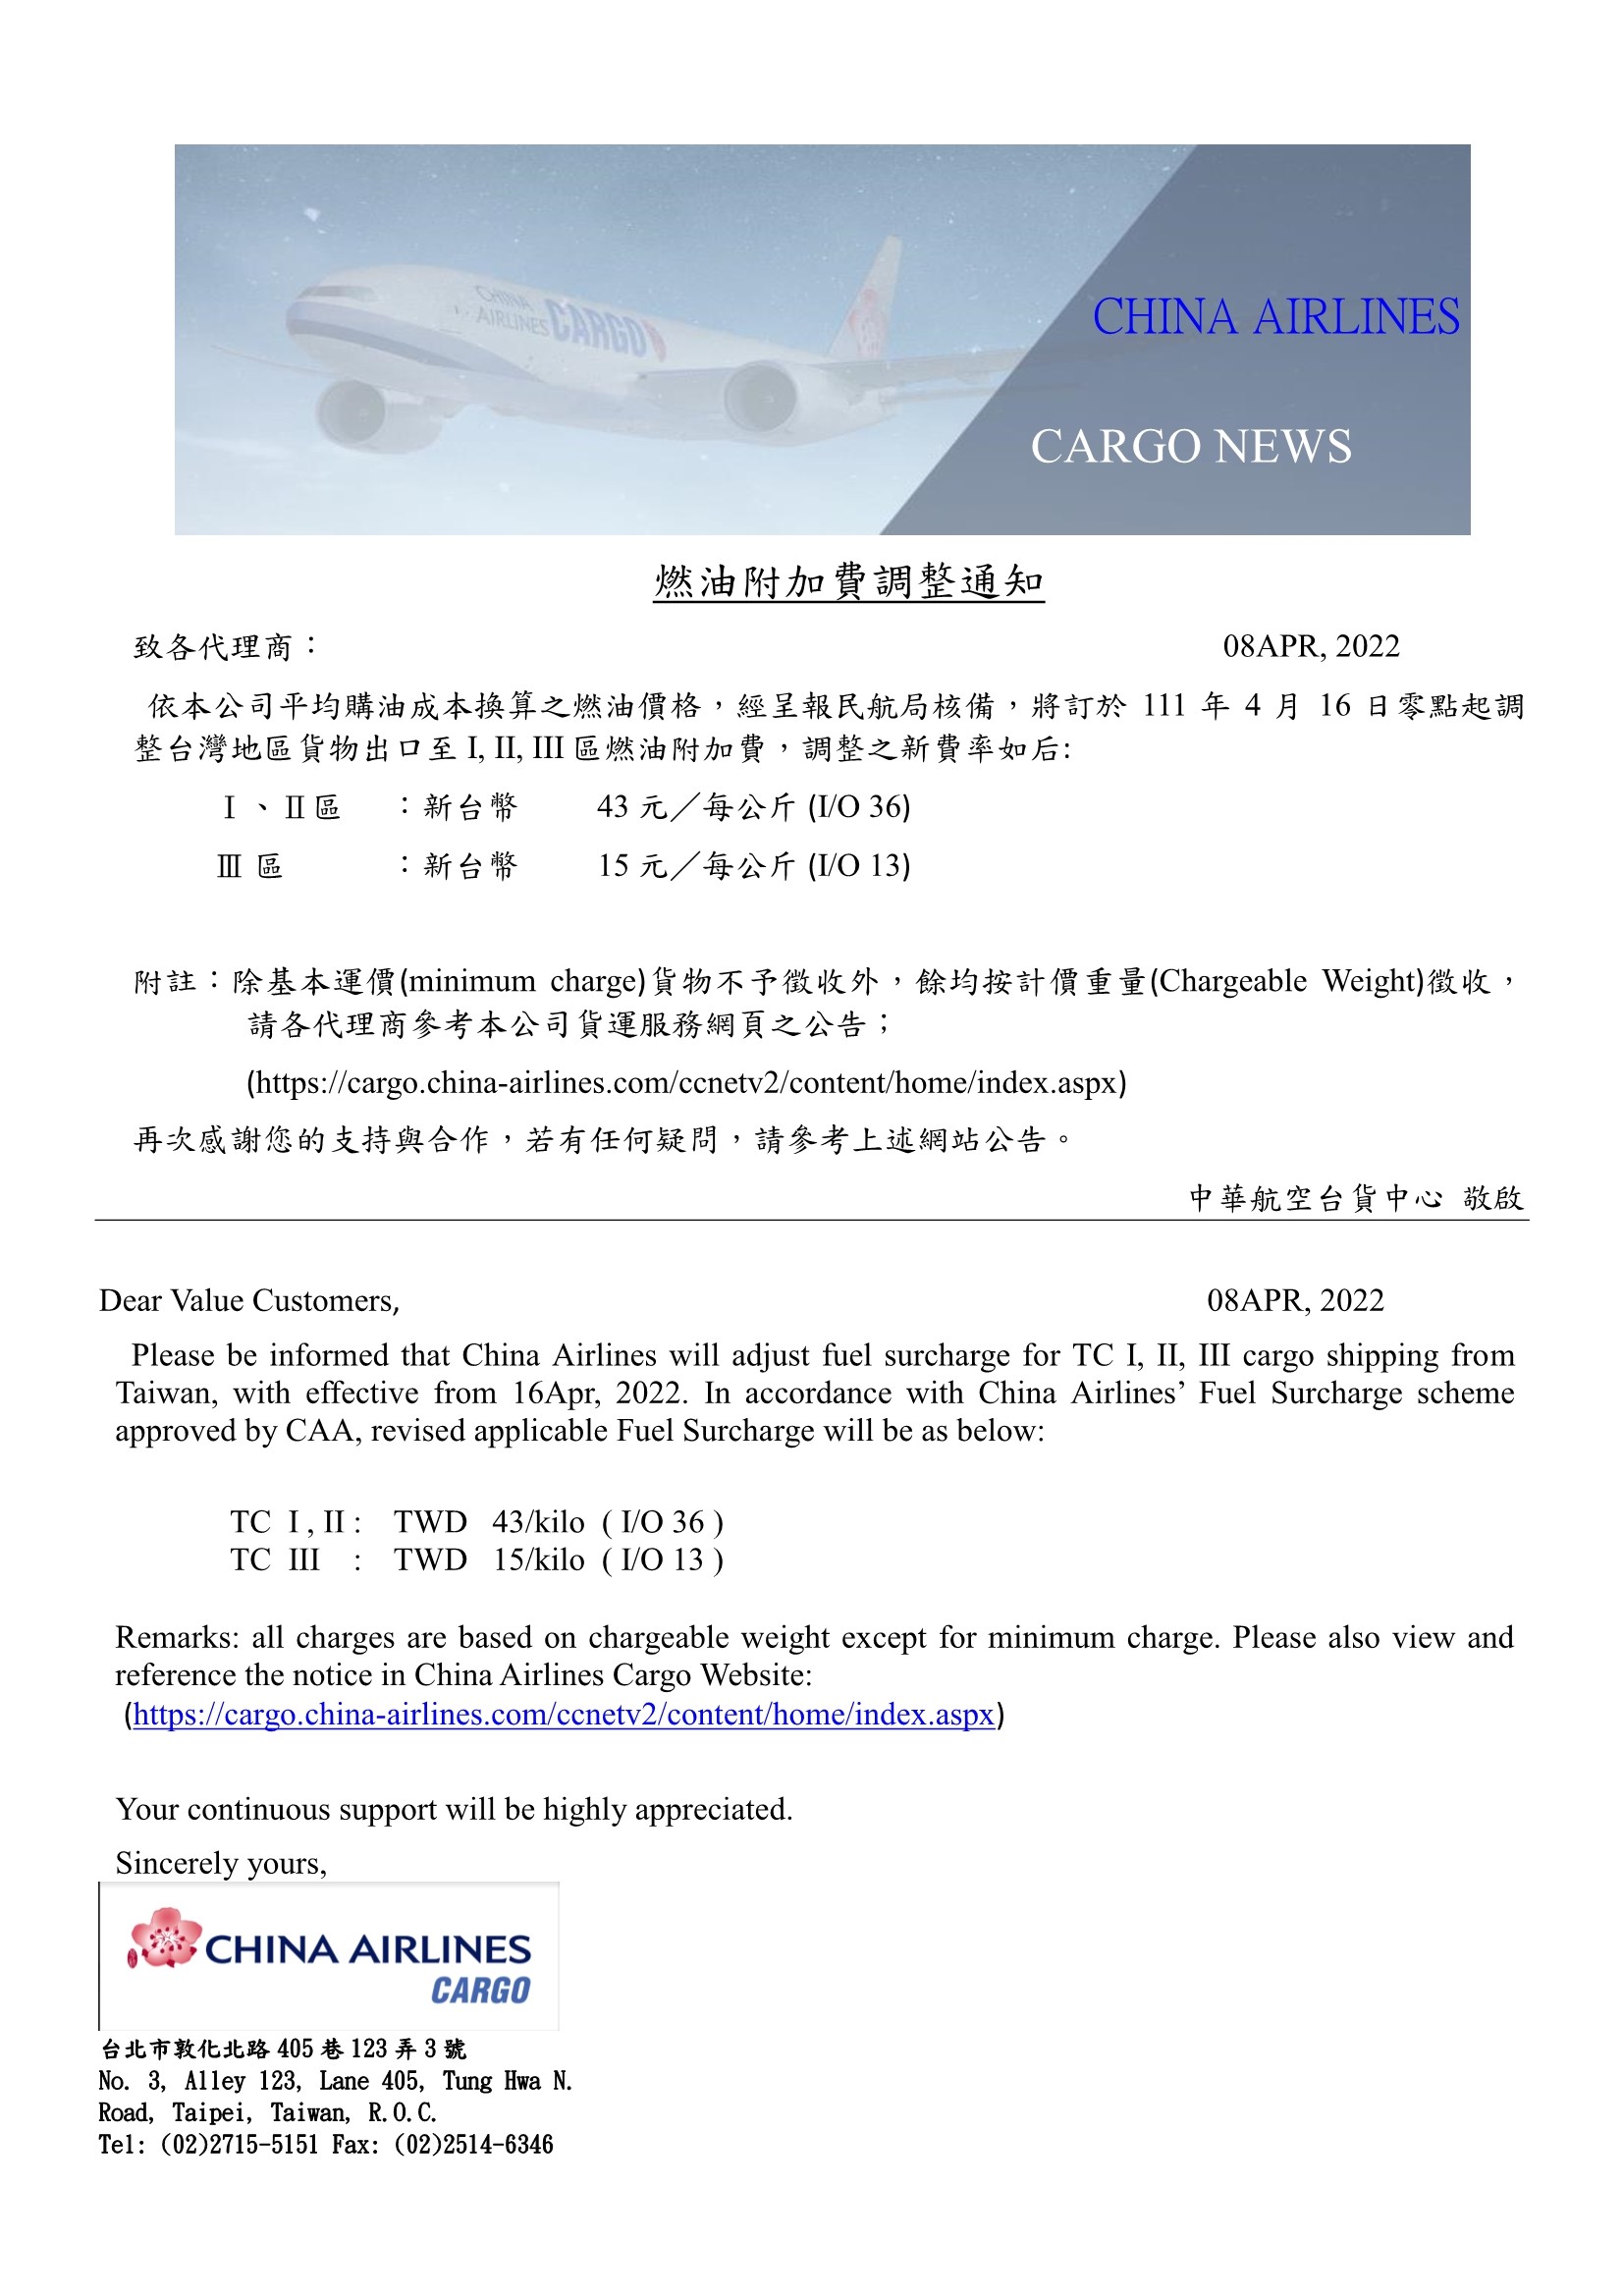 中華航空2022年4月16日台灣區貨運燃油附加費調整公告.jpg